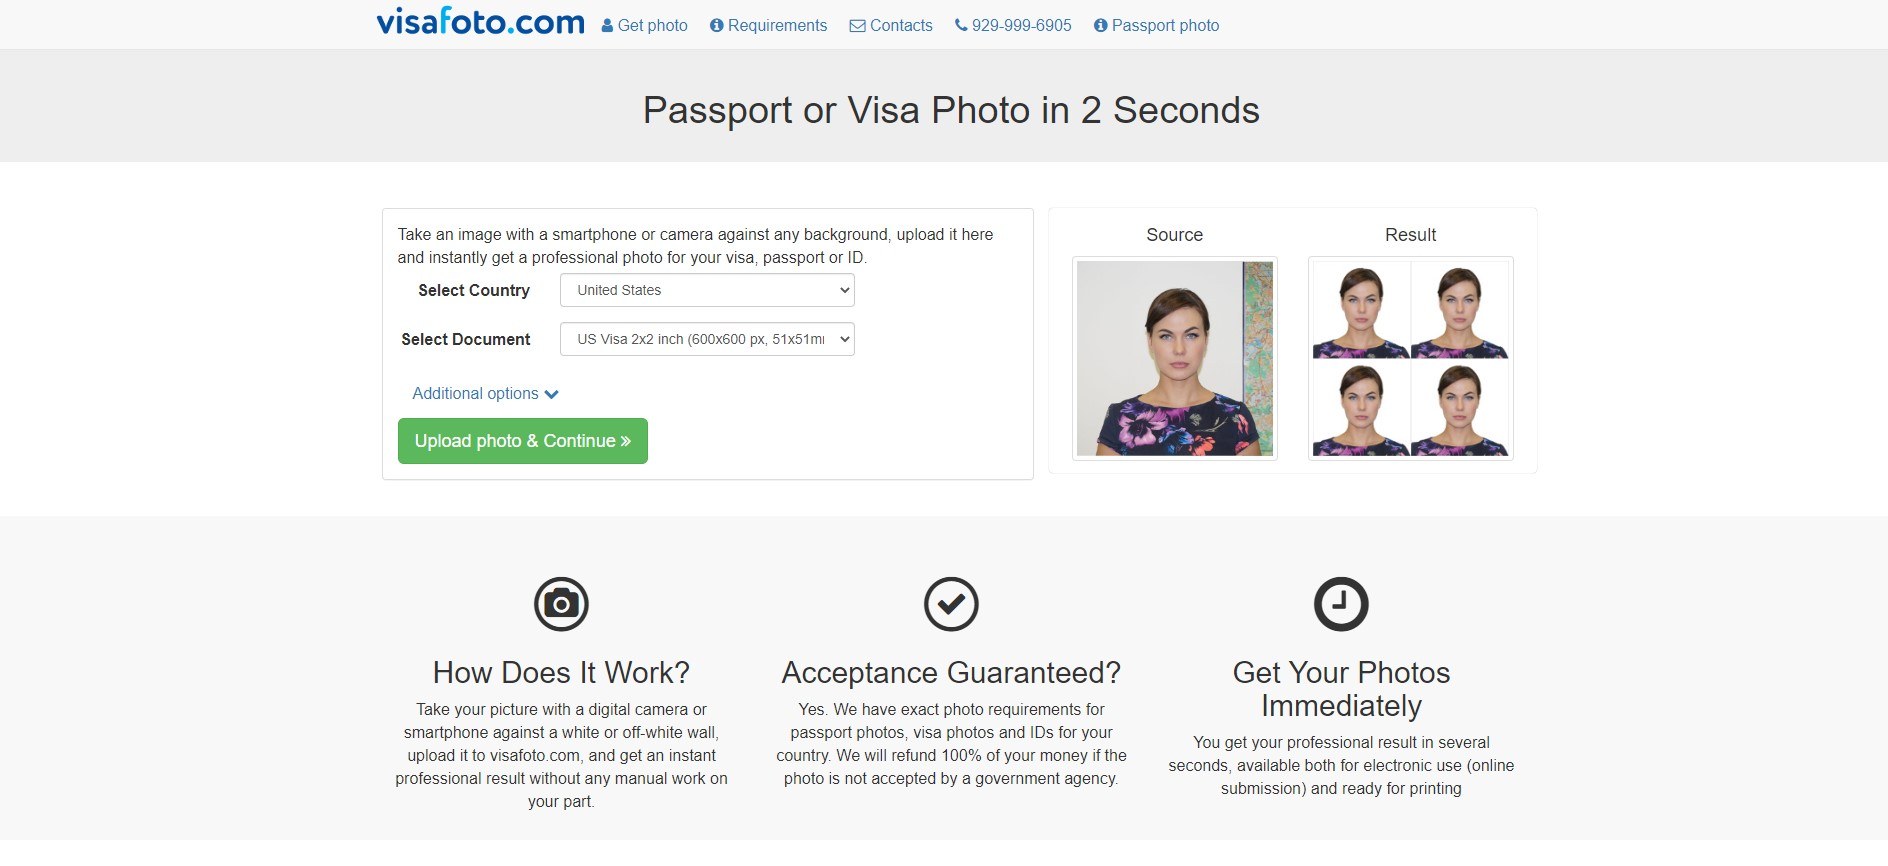 visafoto.com home page